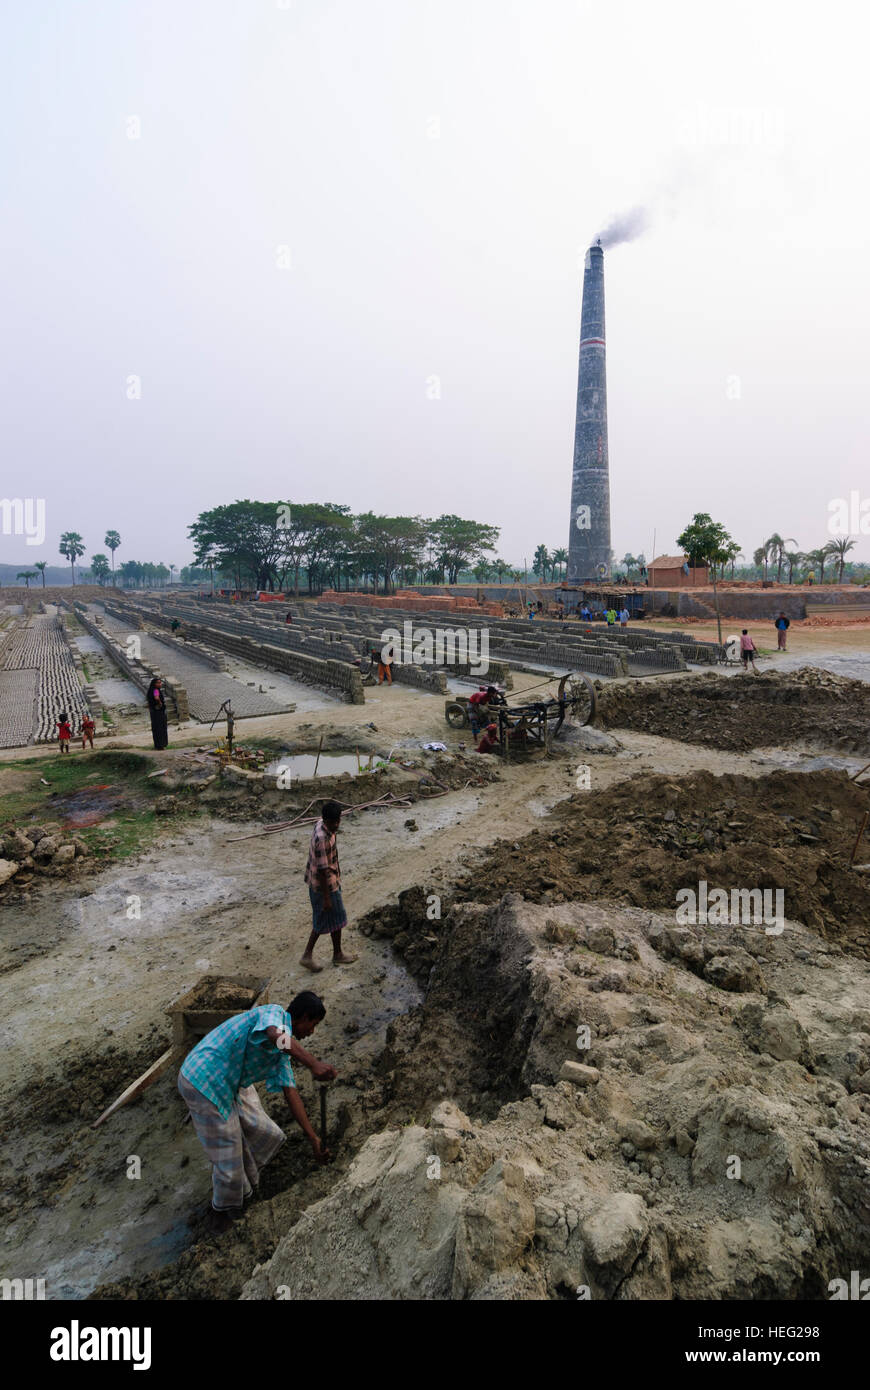 Noapra: Brickyard, mattoni, Khulna Division, Bangladesh Foto Stock